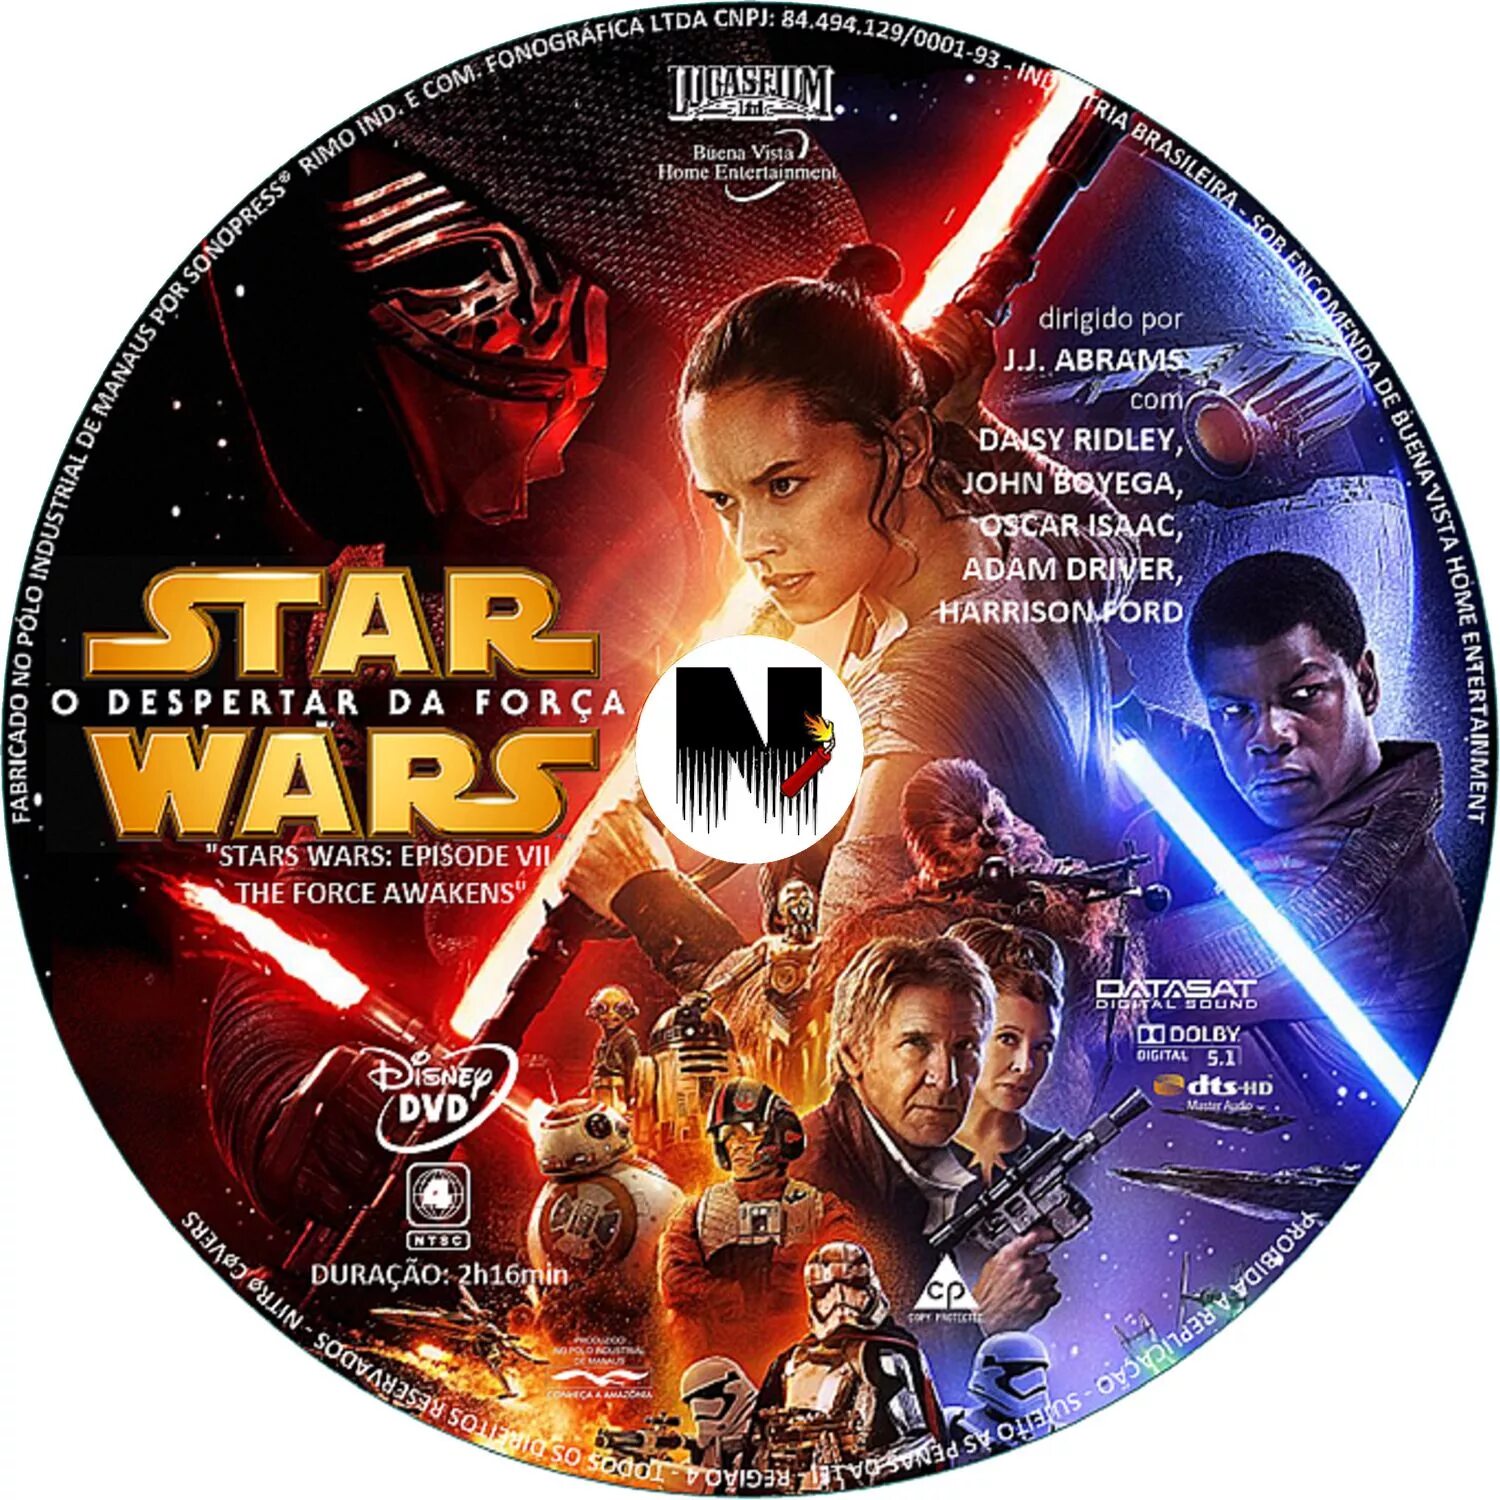 Звездный диск. Звёздные войны: Пробуждение силы обложка DVD DVD. Звёздные войны диск двд. Эпизод 6 Звездные войны двд обложка. Звездные войны 3 диск.